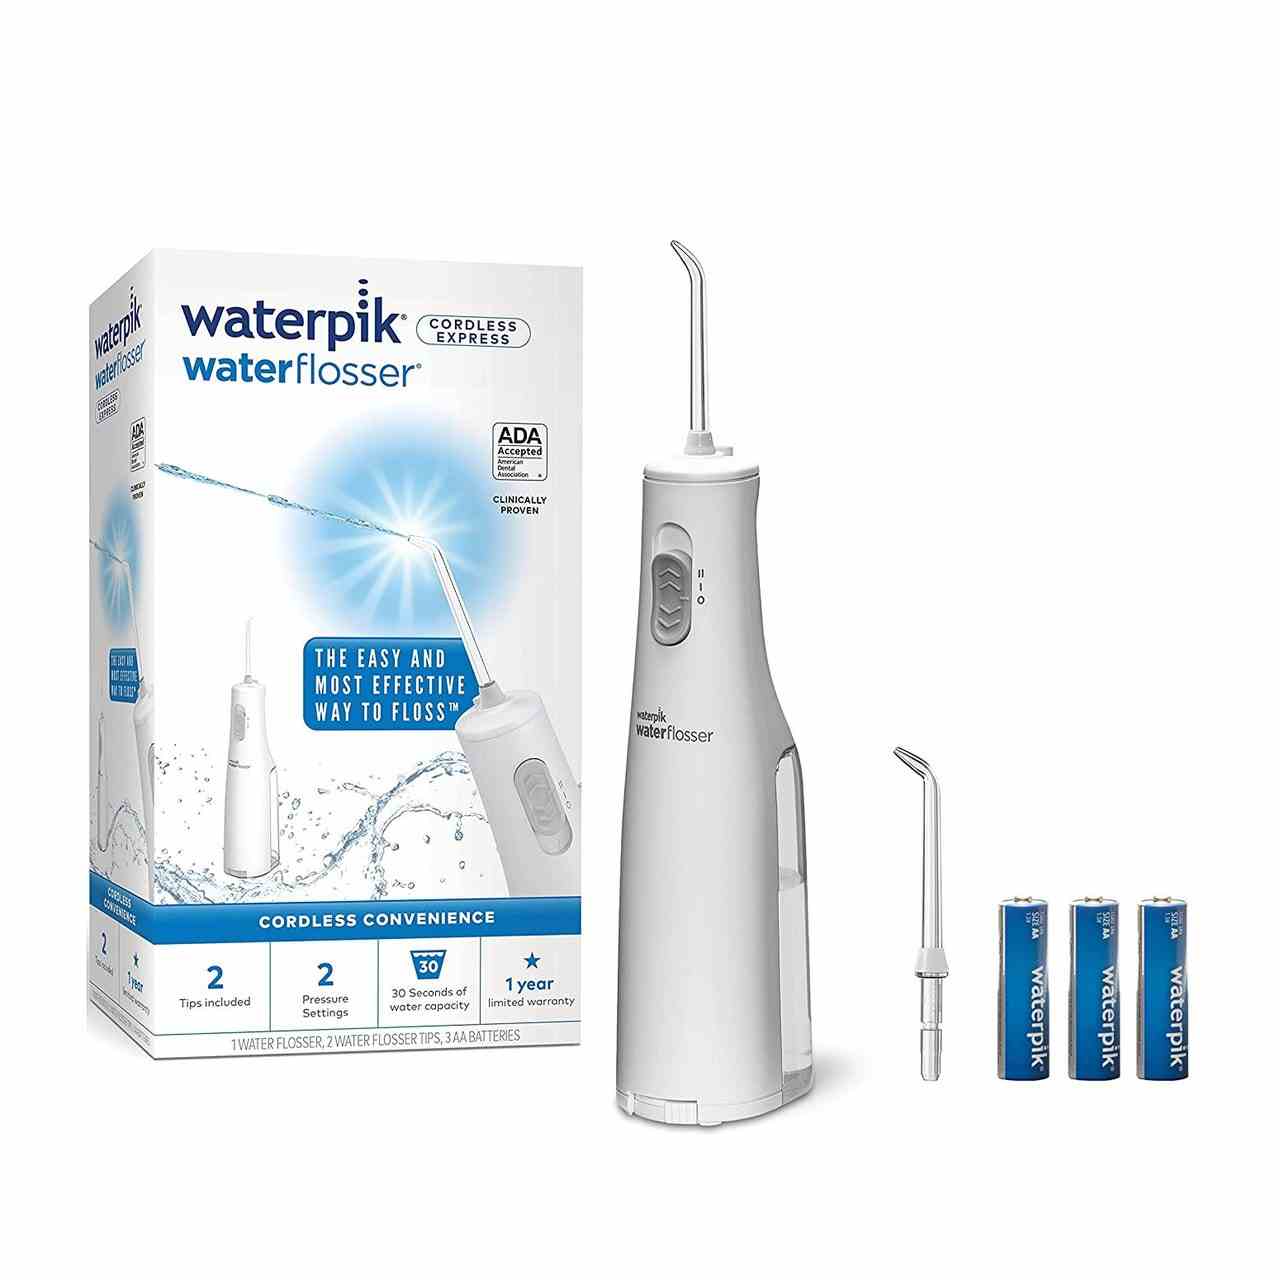 Waterpik Kit für kabellose Mundduschen auf weißem Hintergrund